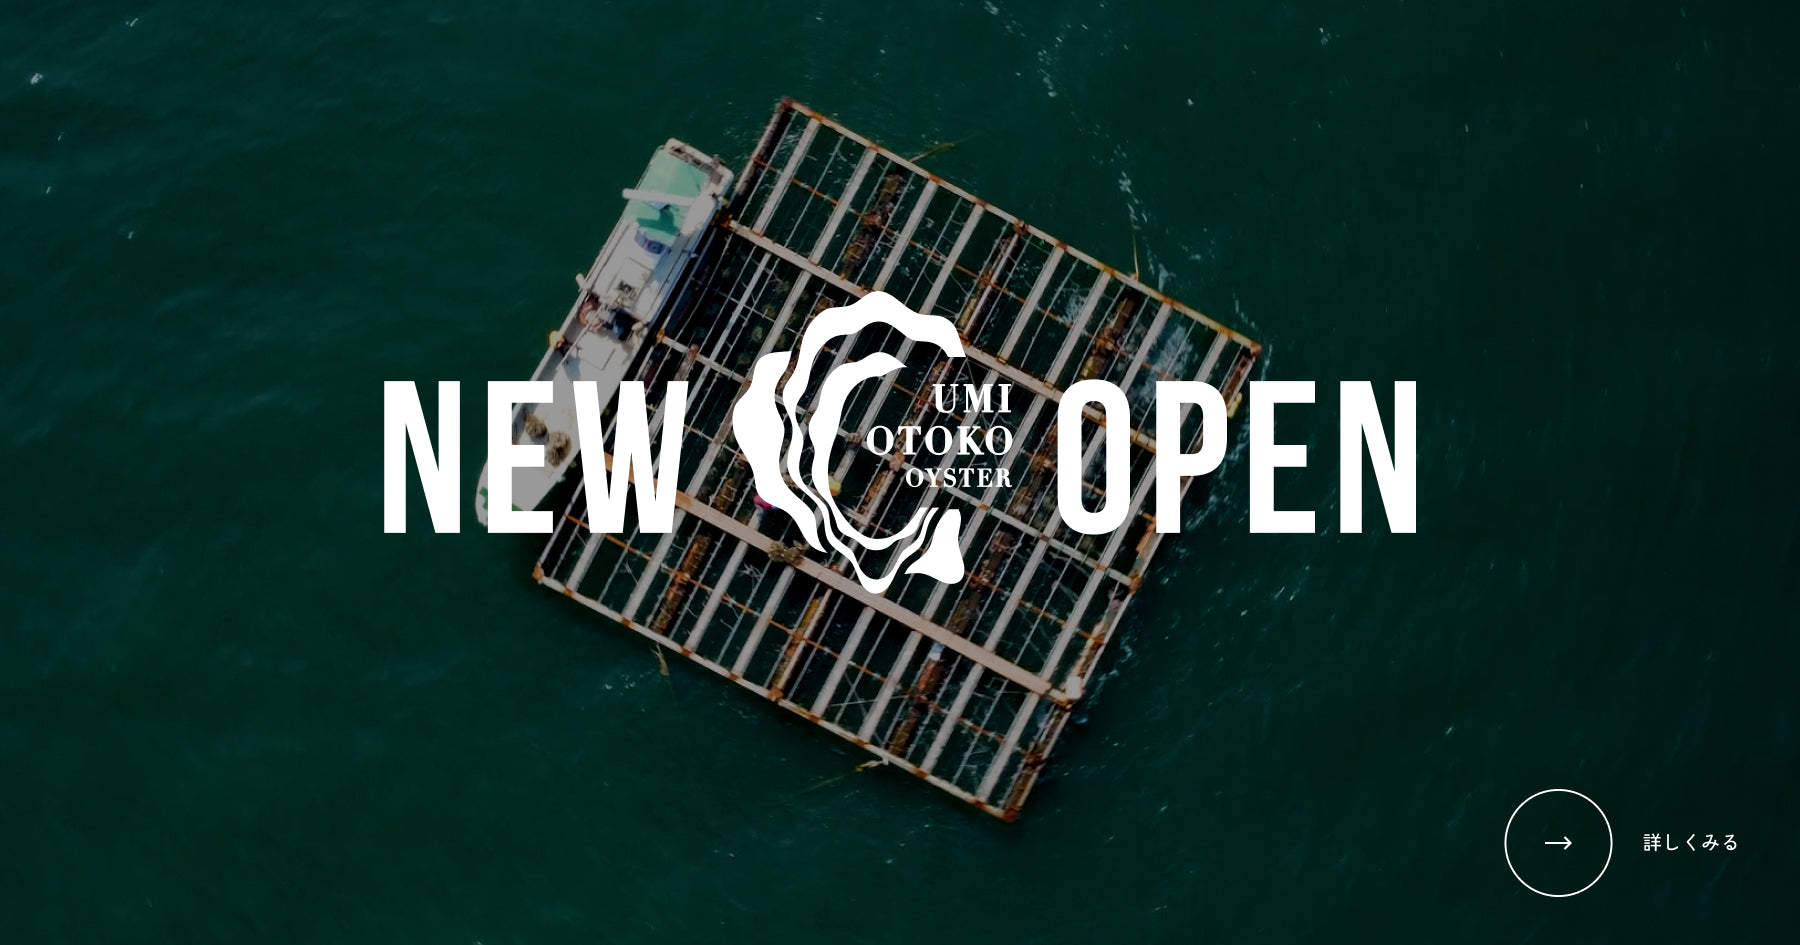 海男オイスターの生牡蠣通販サイトがリニューアルオープンしました。商品一覧はこちら。